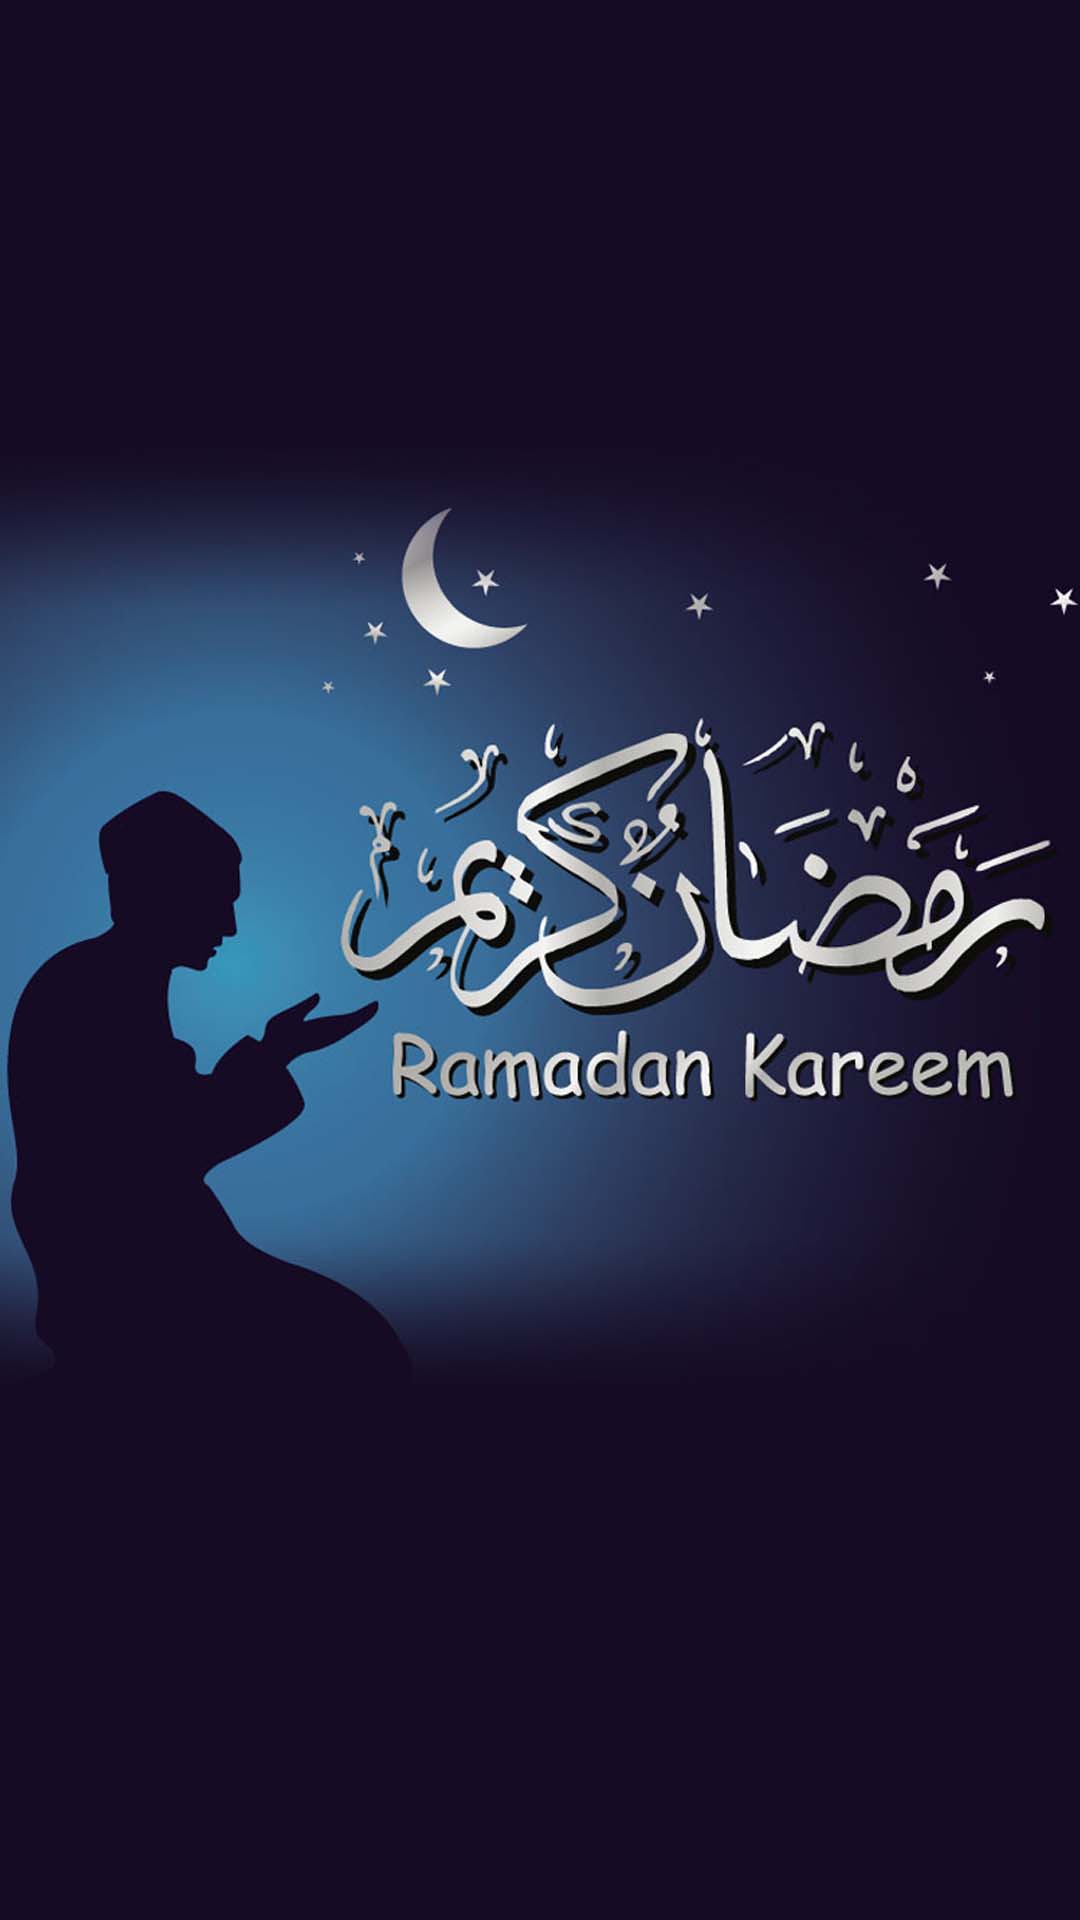 اجمل خلفيات الموبايل بمناسبه شهر رمضان 2020 HD-11